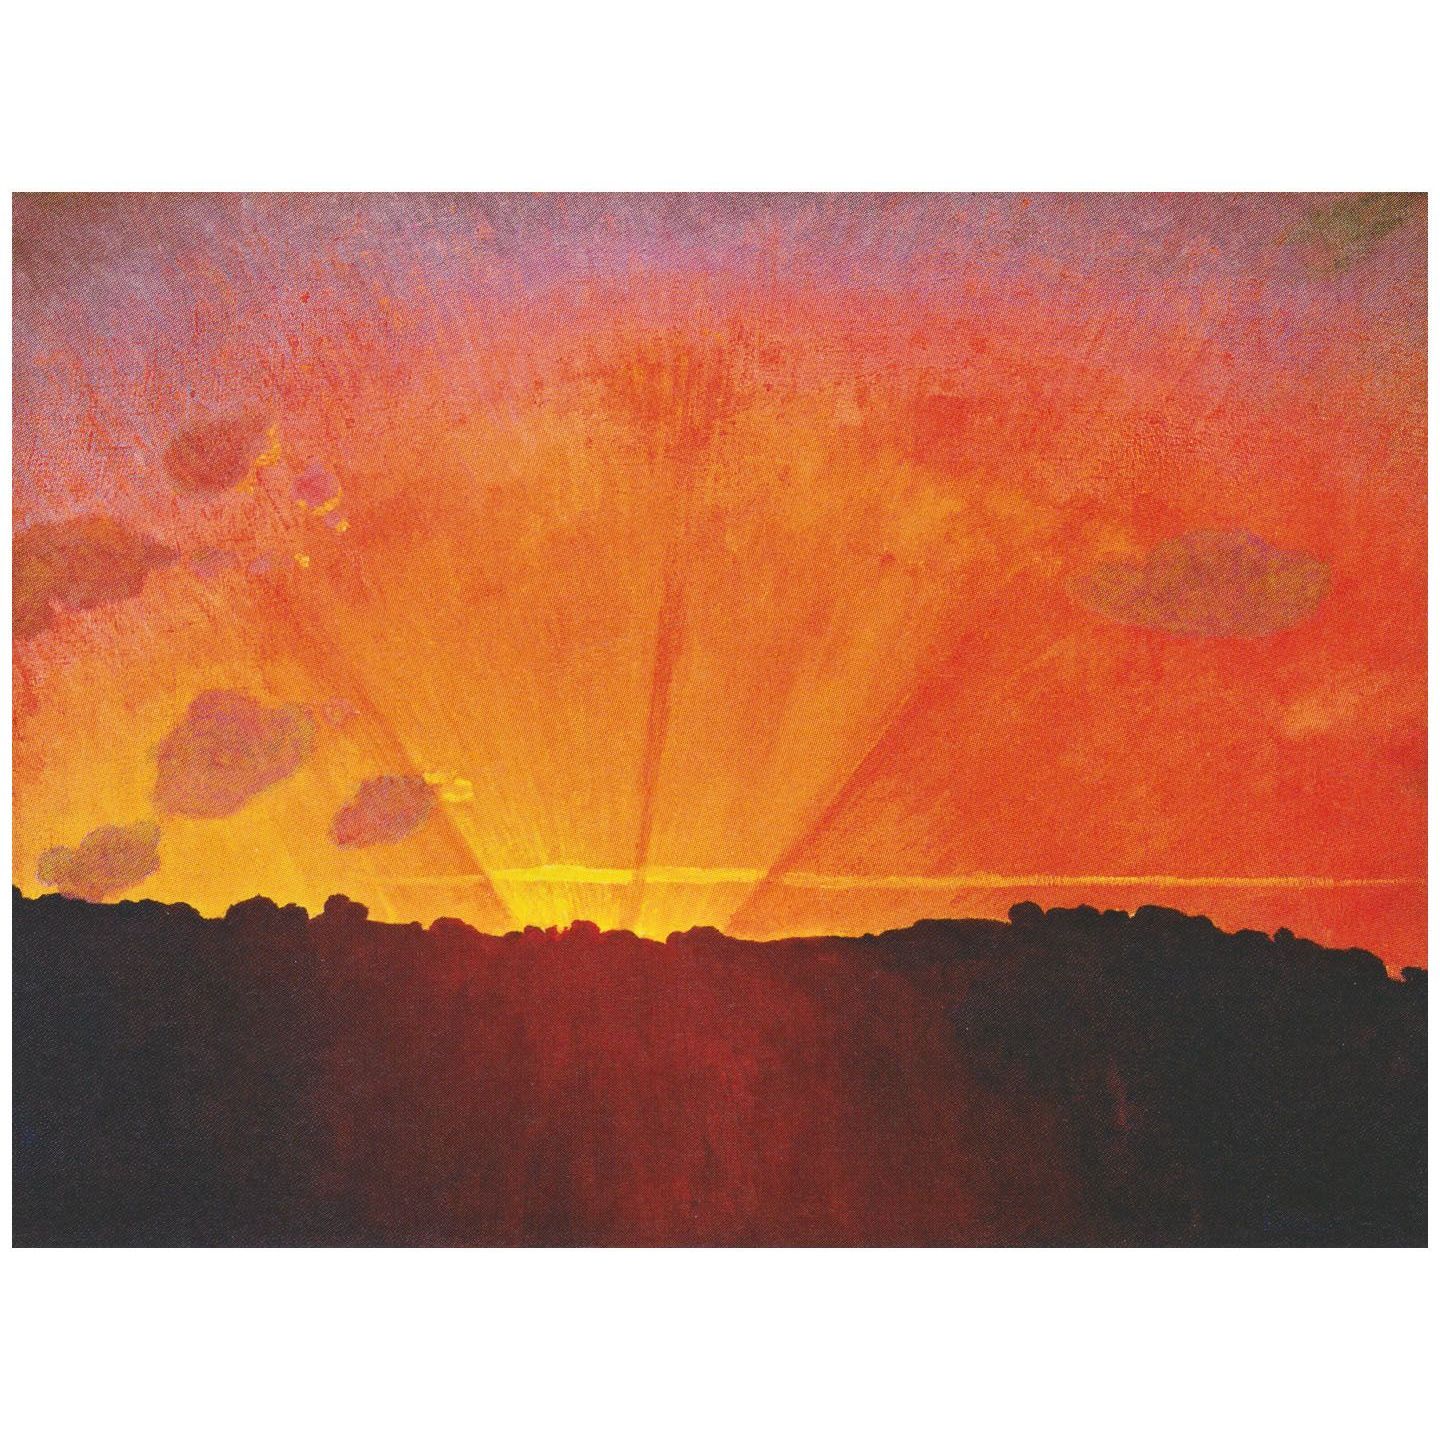 Felix Vallotton. Coucher de soleil, ciel orange. 1910. Kunstmuseum Winterthur